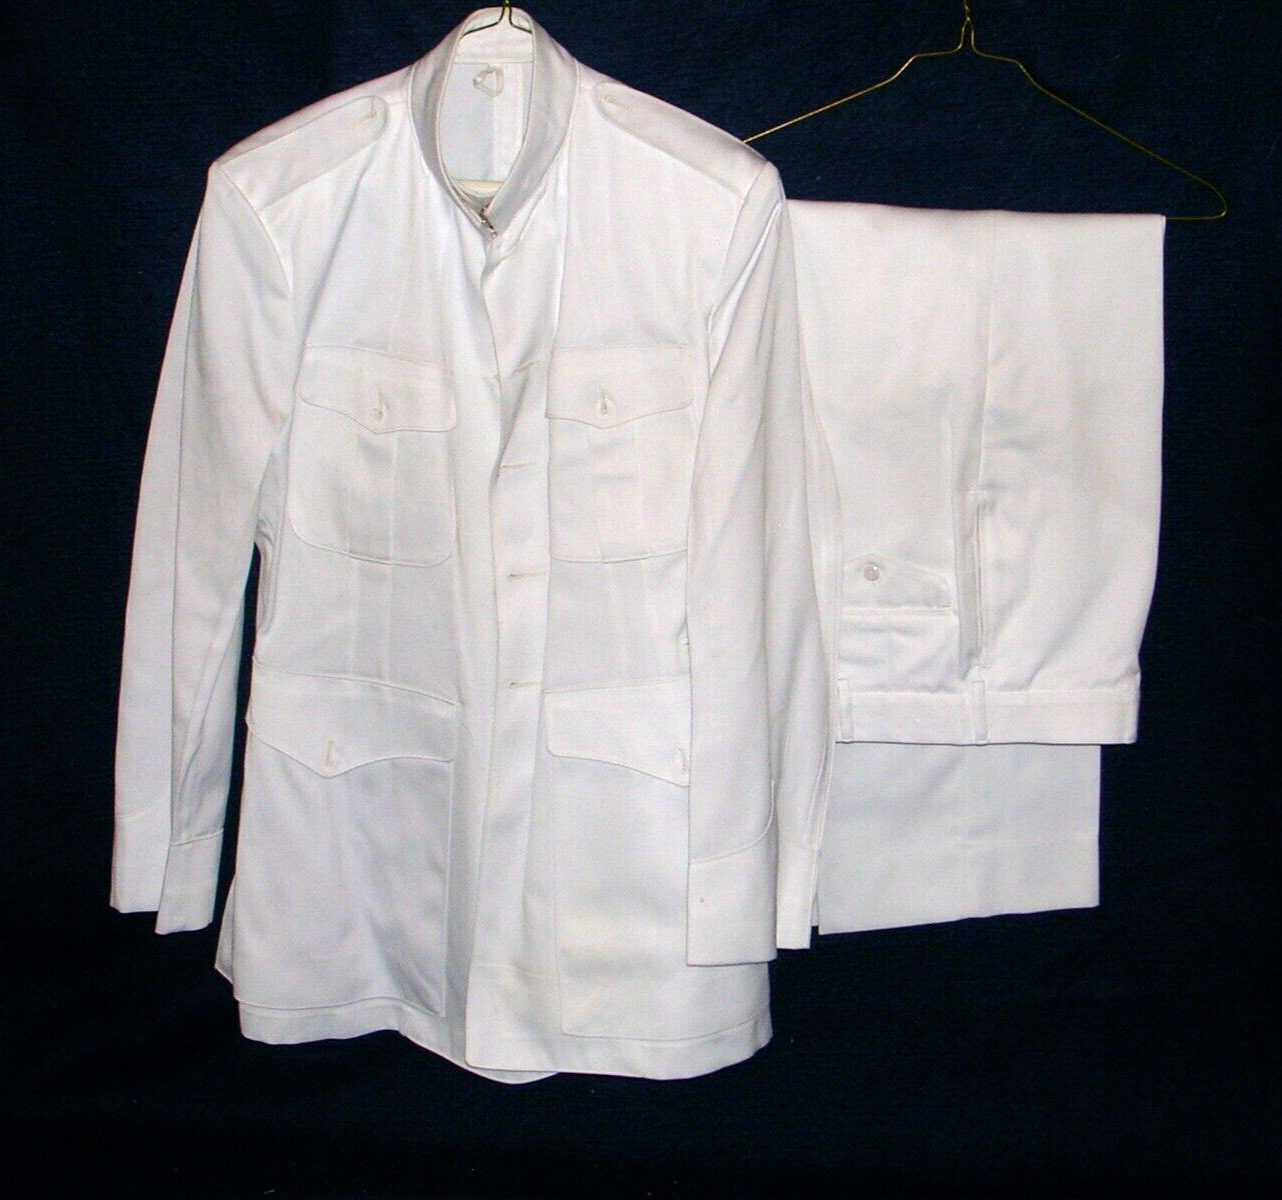 WWII USMC US Marine Corp Dress White Uniform 45L 35L MINT W/ TAG NOT WORN RARE